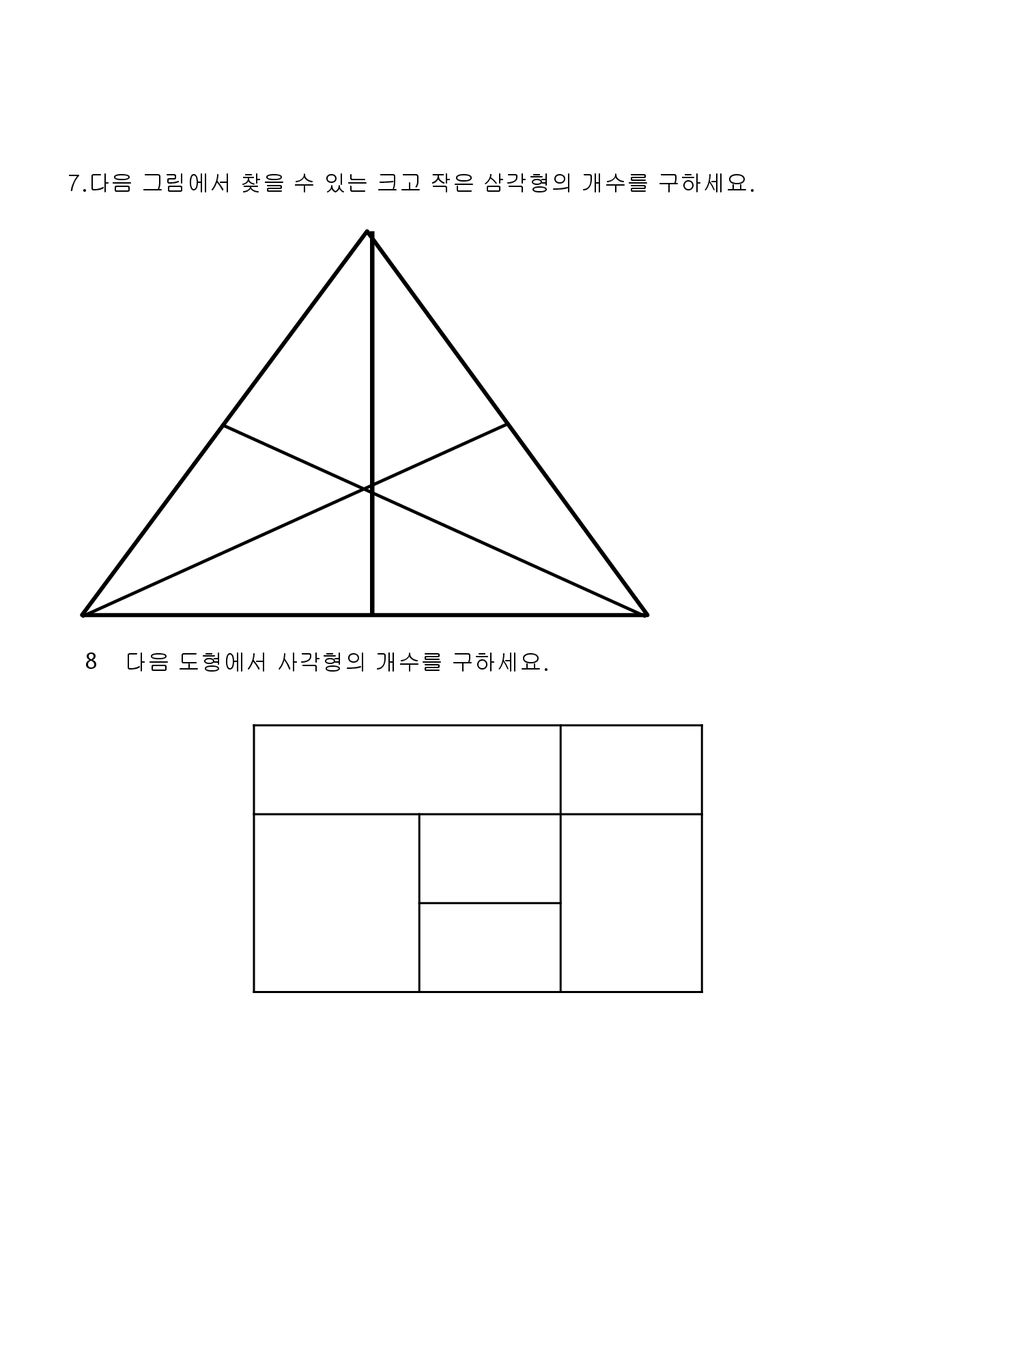 7.다음 그림에서 찾을 수 있는 크고 작은 삼각형의 개수를 구하세요.